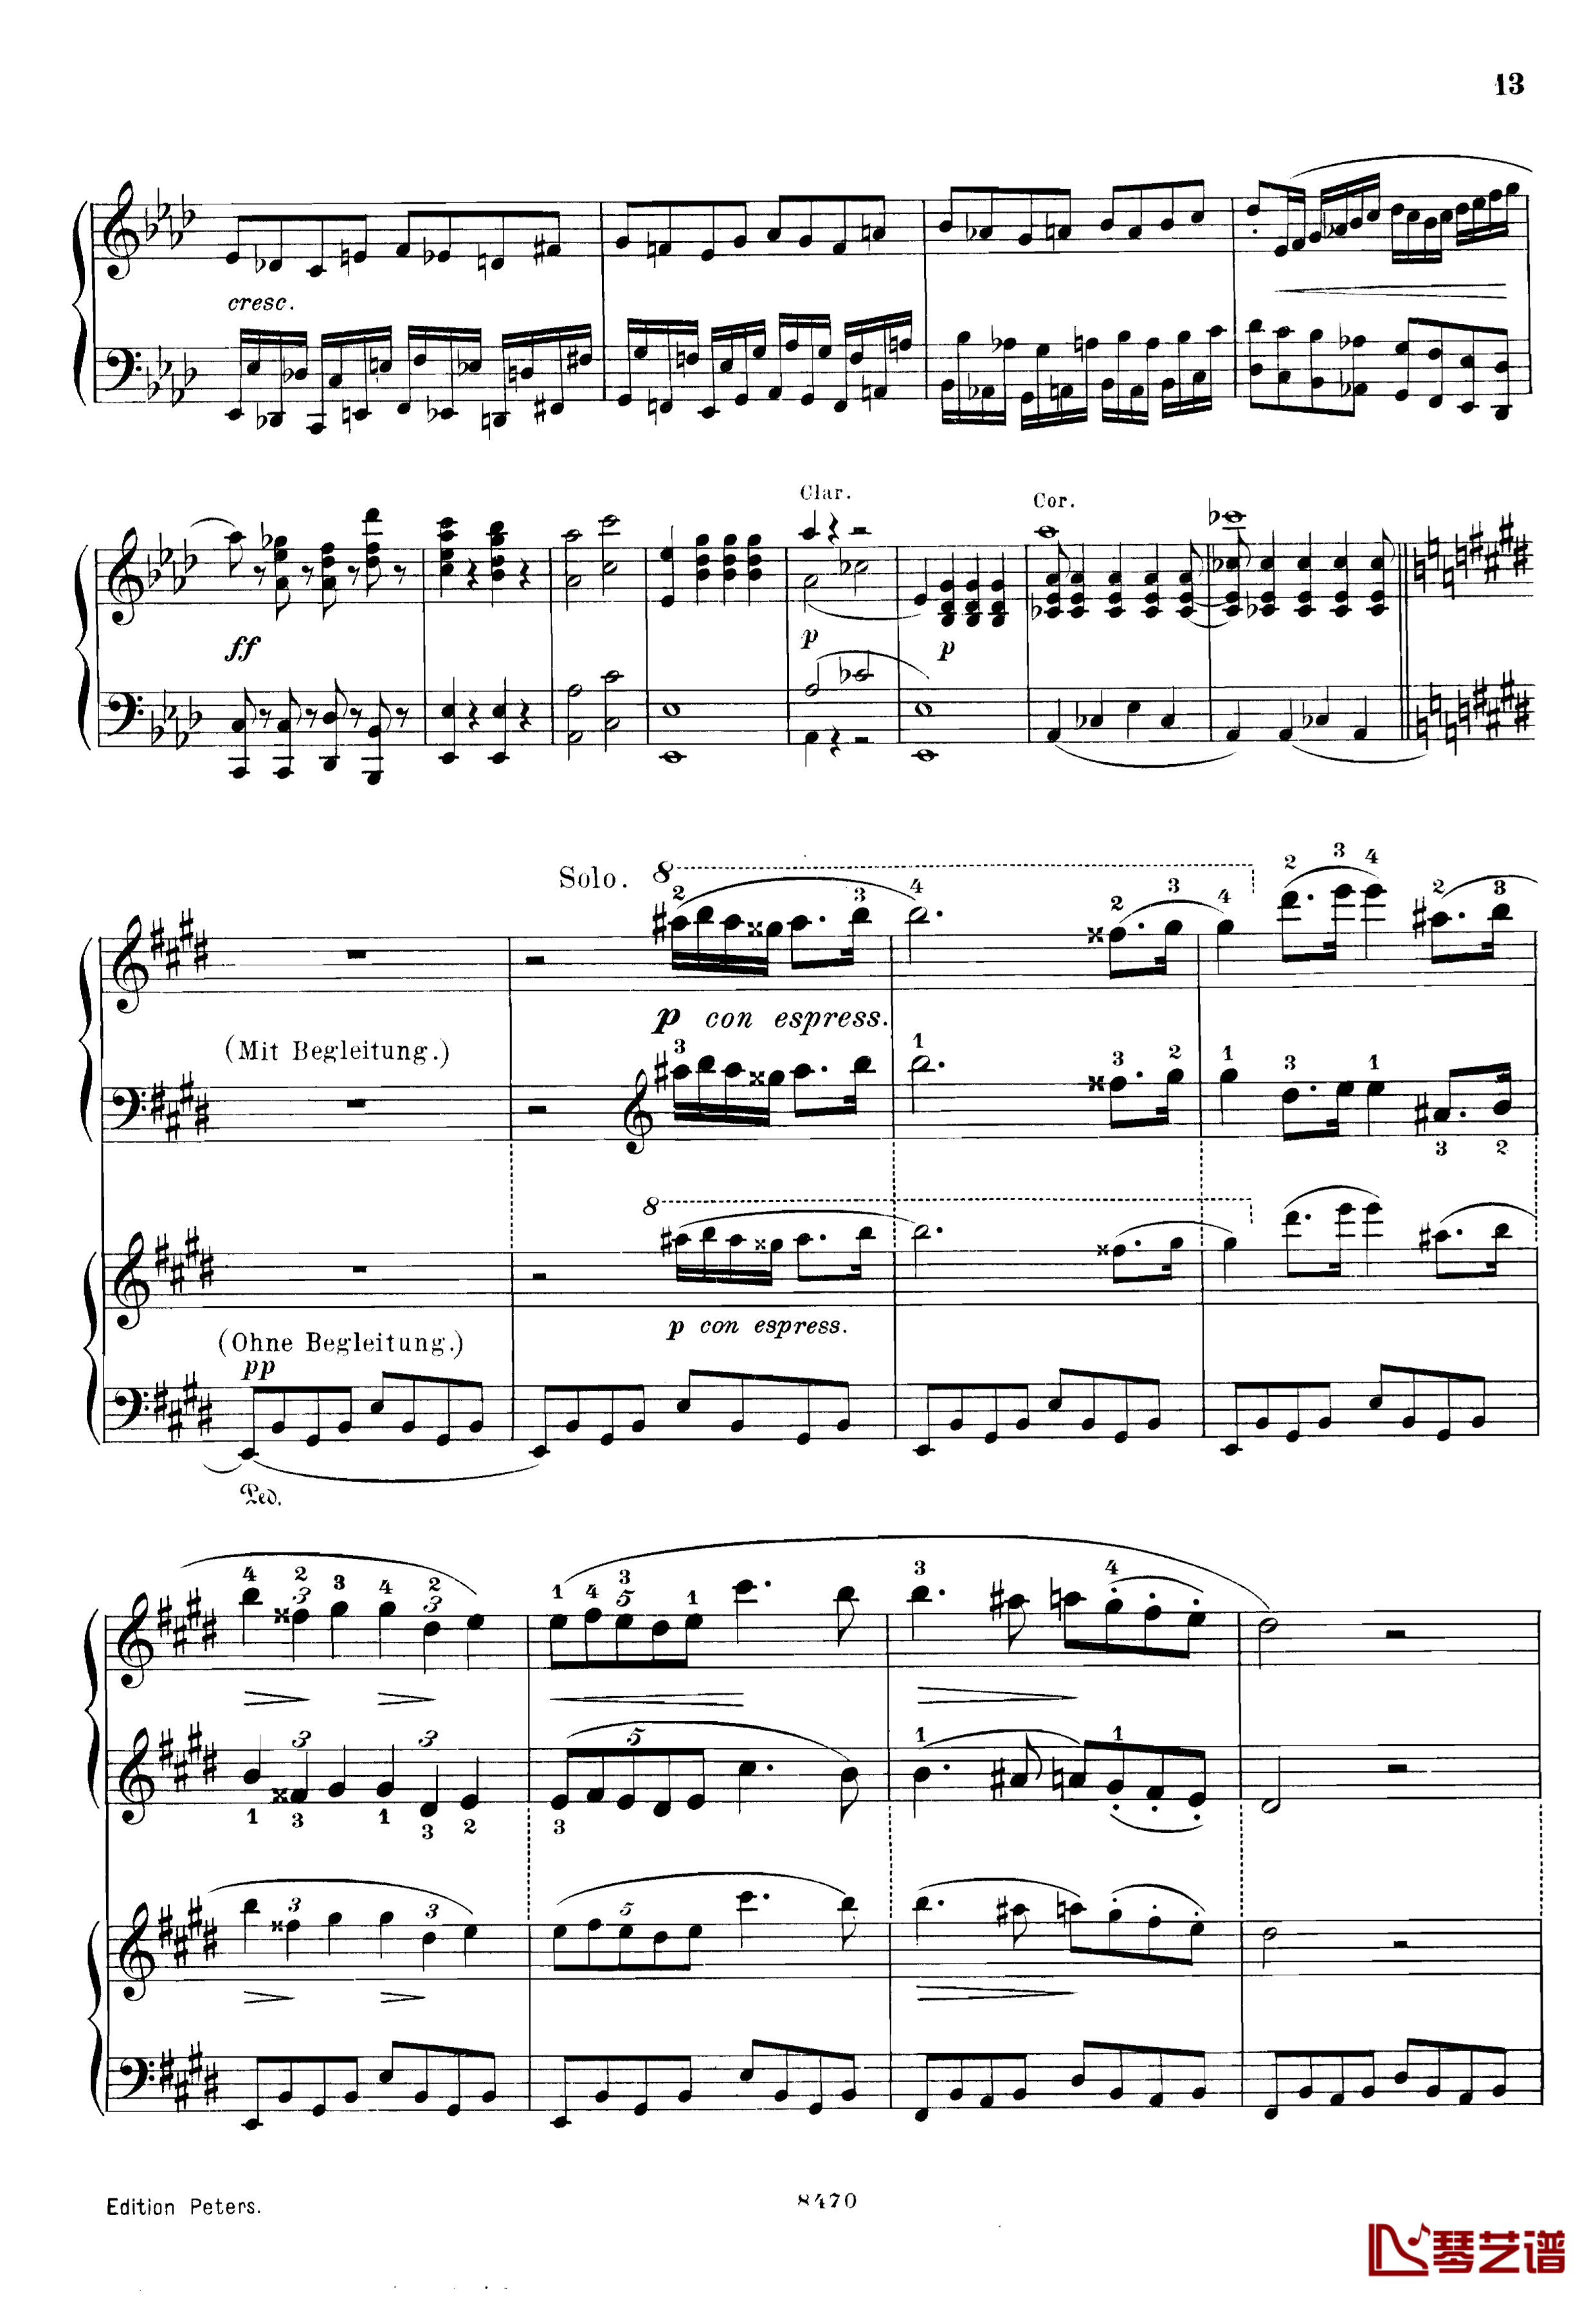 升c小调第三钢琴协奏曲Op.55钢琴谱-克里斯蒂安-里斯13